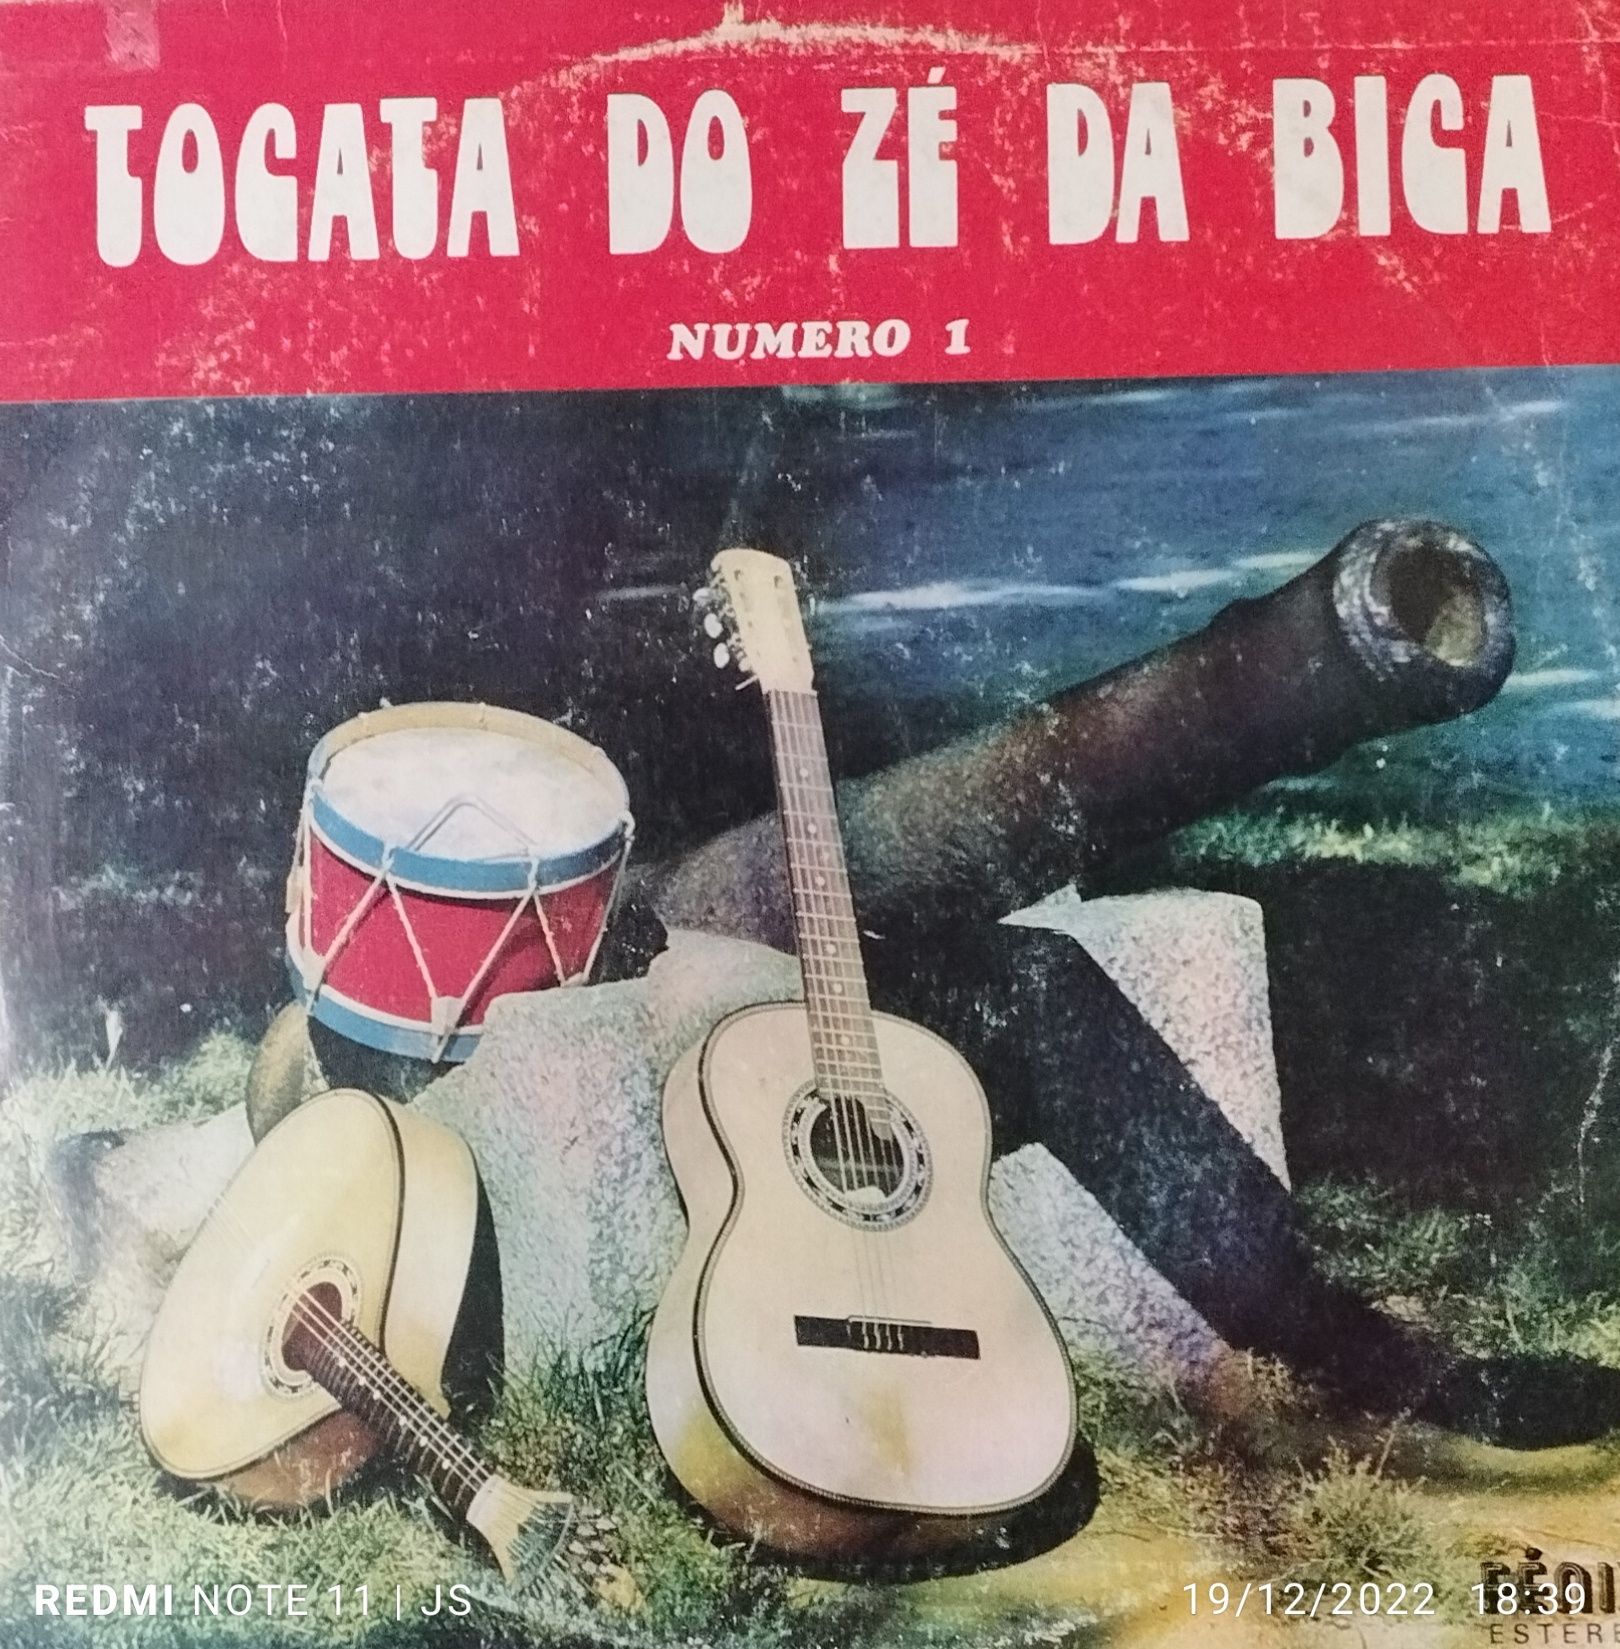 Discos vinil música celebre Portuguêsa desde 5€